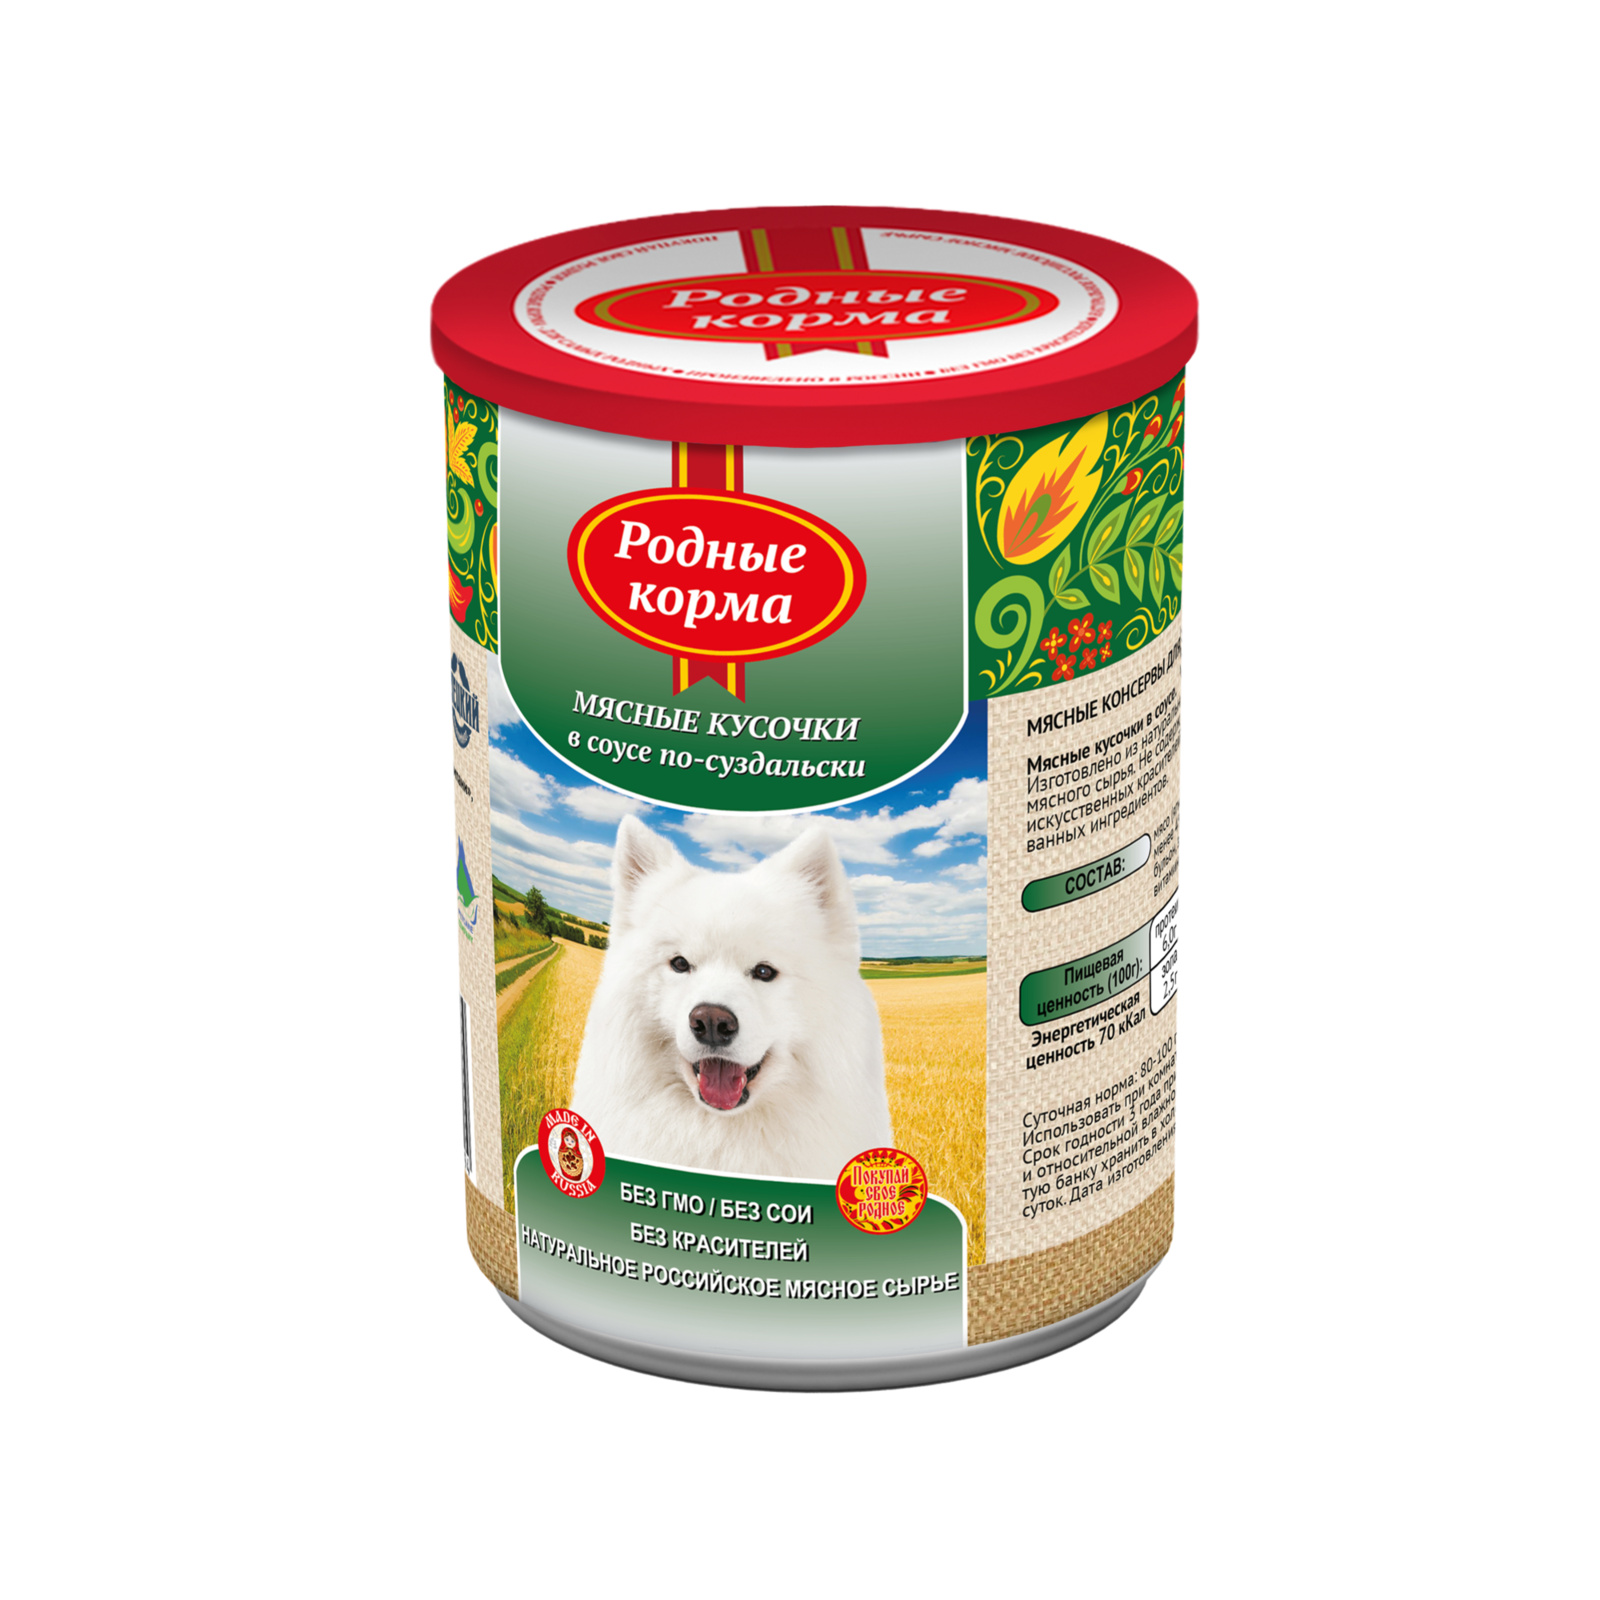 Родные корма Родные корма консервы для собак мясные кусочки в соусе по-суздальски (970 г) 61626